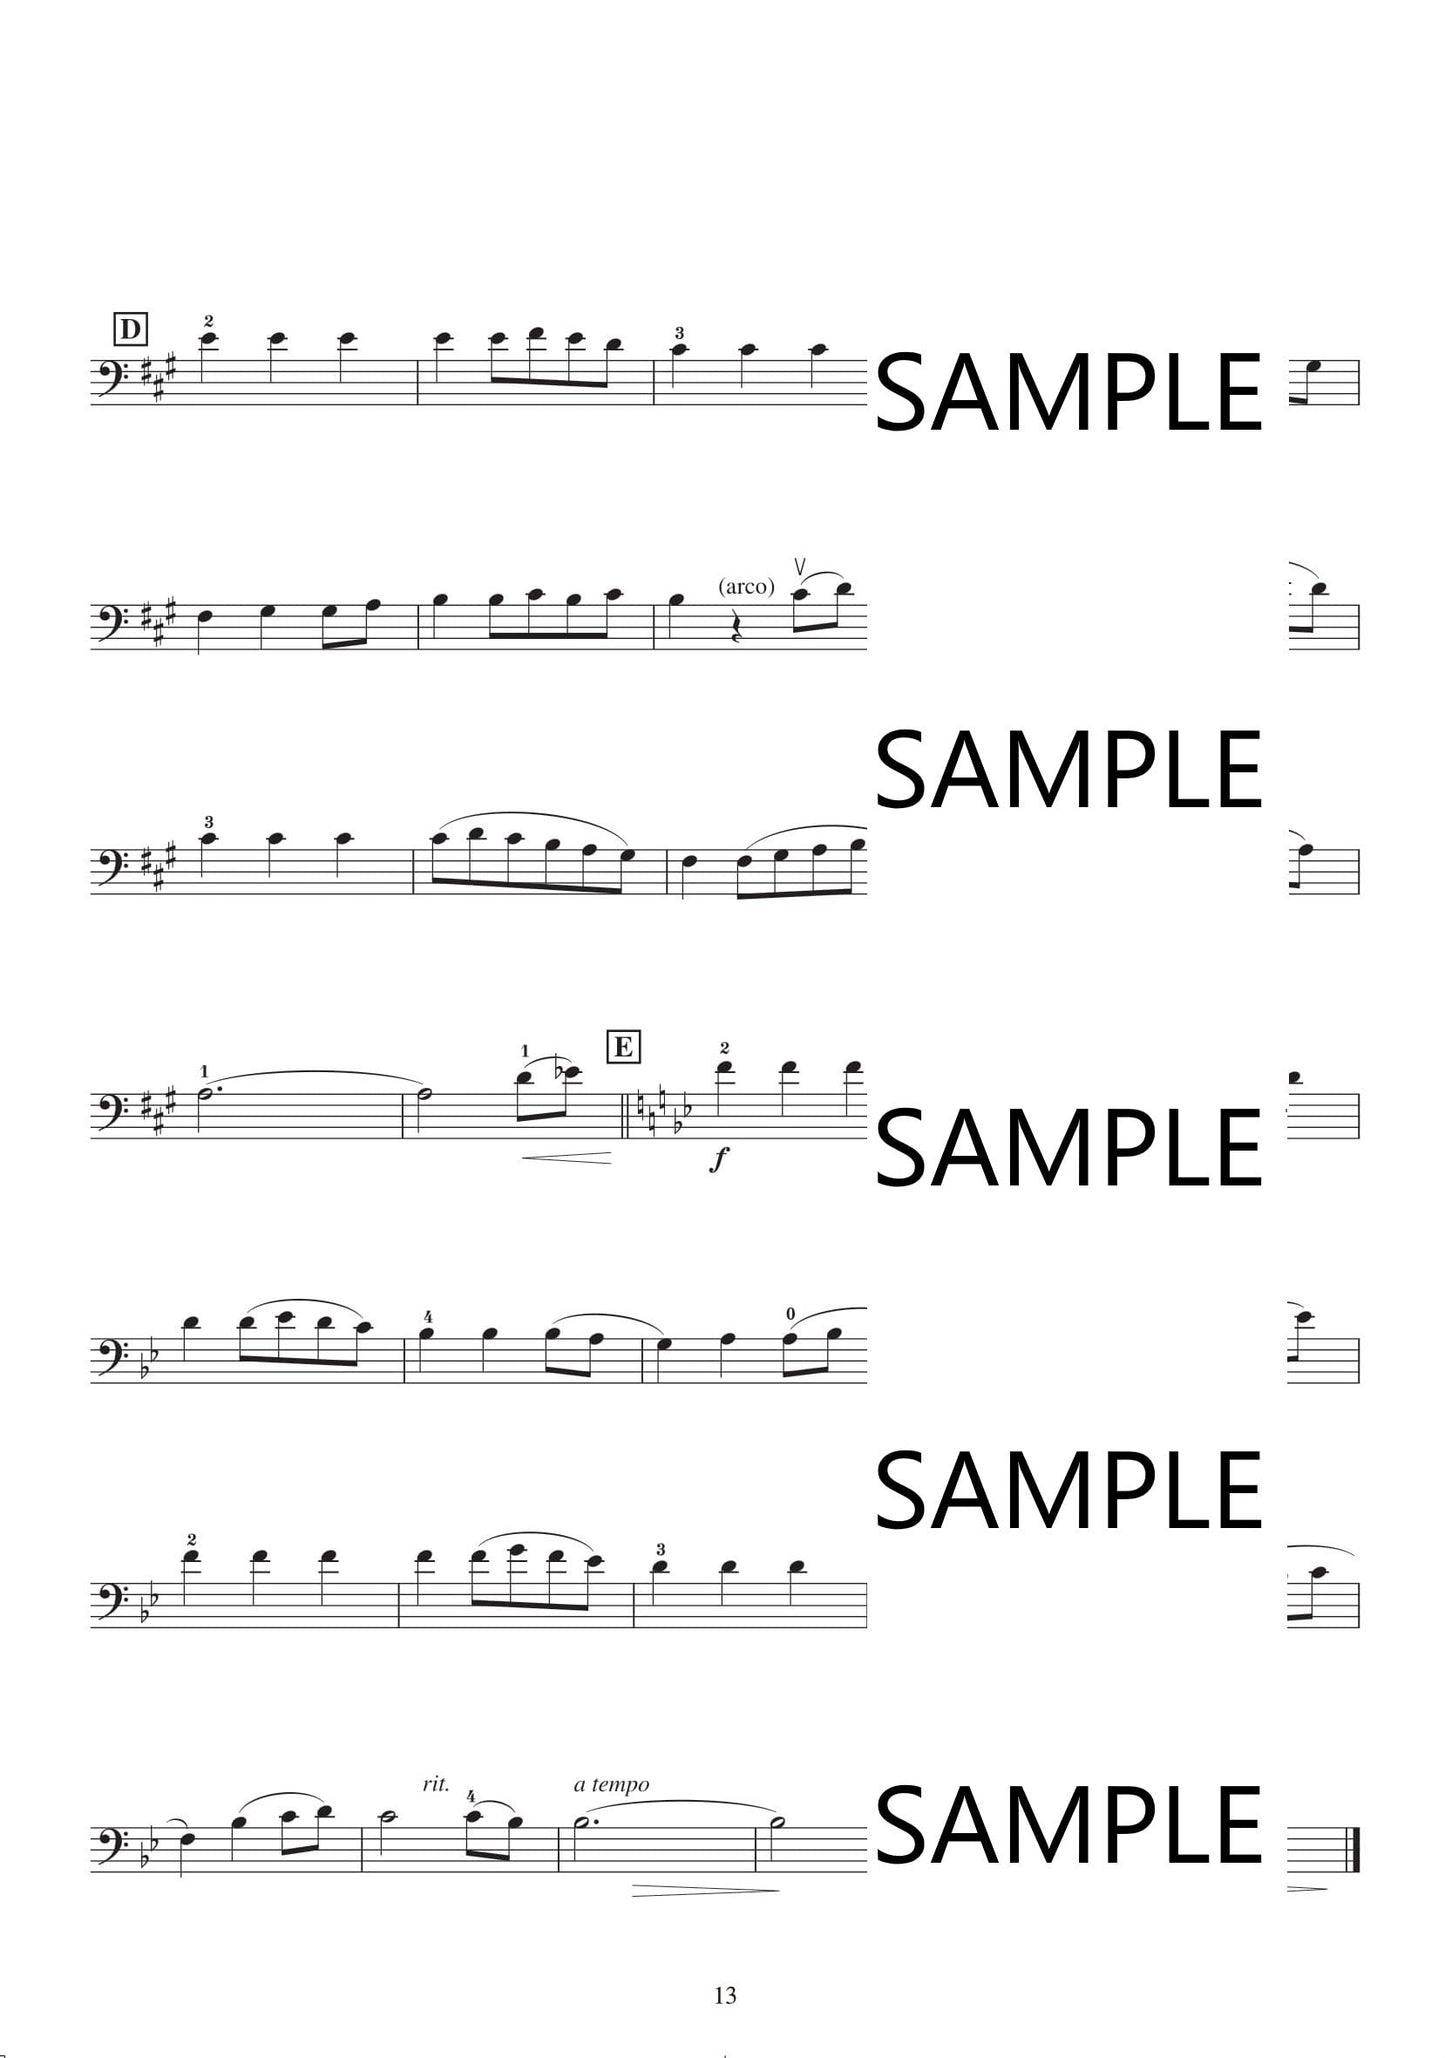 Studio Ghibli Songs für Cello und Klavier (Pre-Intermediate) / Englische Version Notenbuch